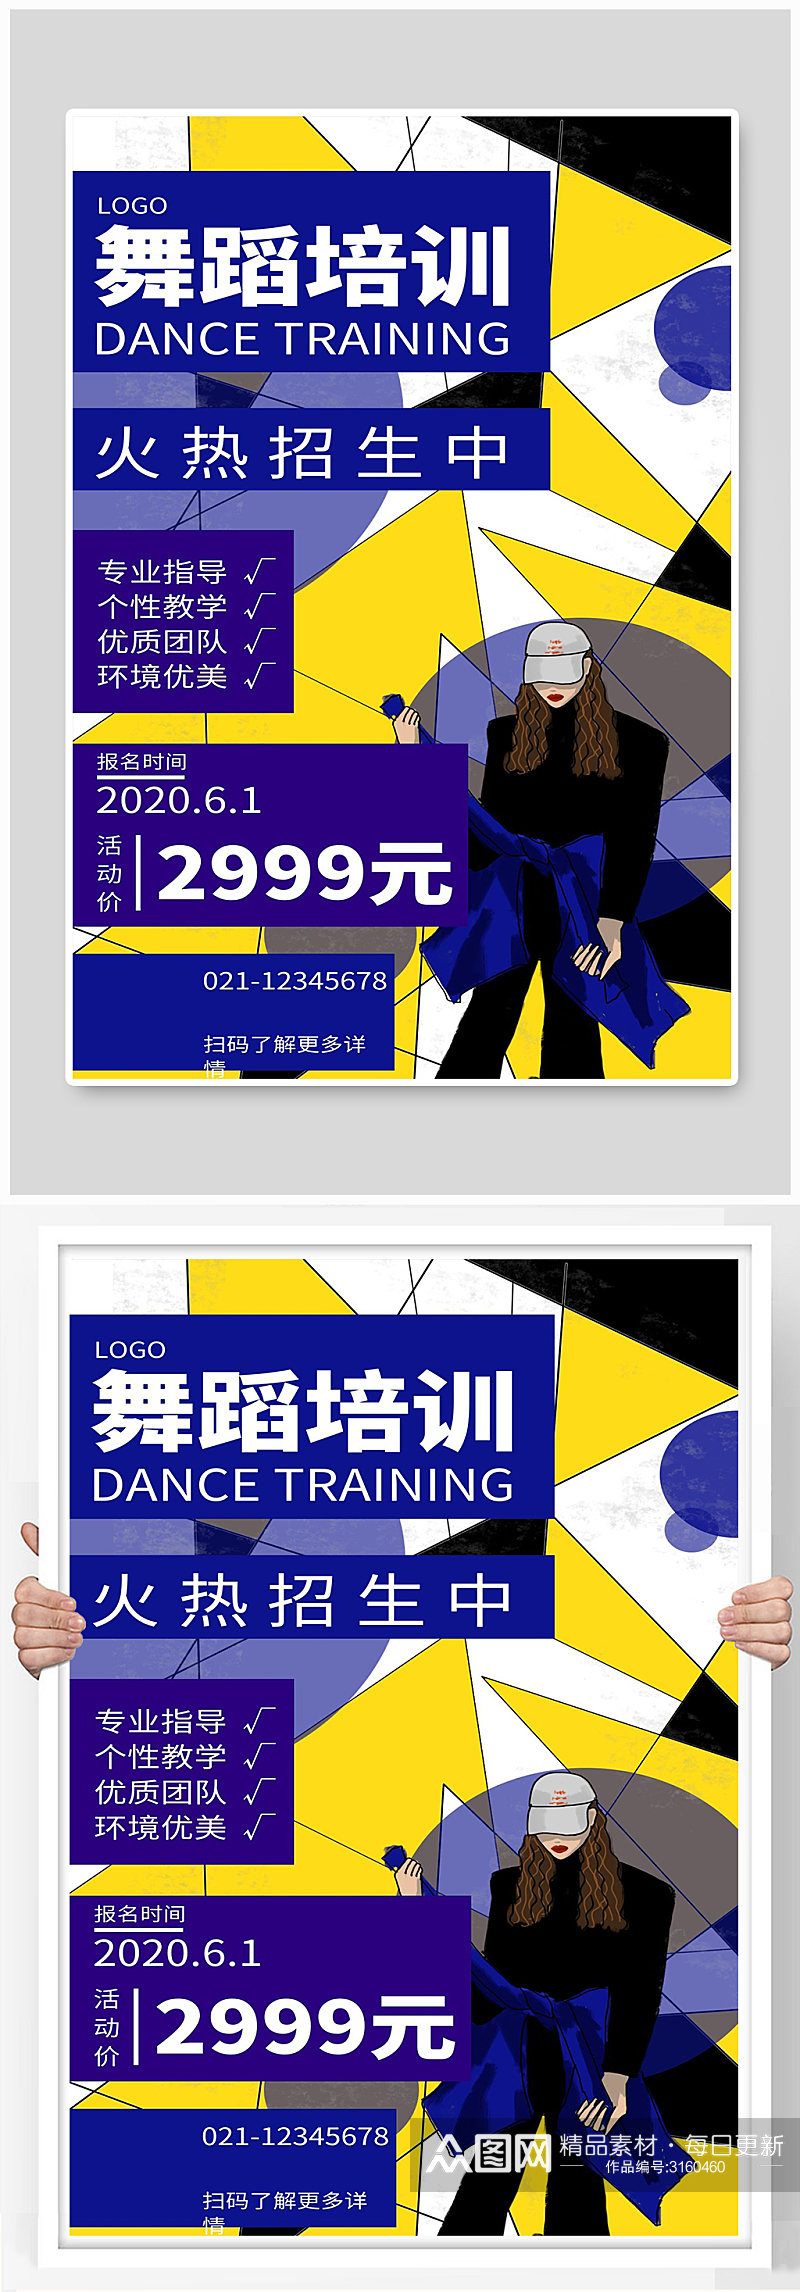 舞蹈培训宣传海报设计素材